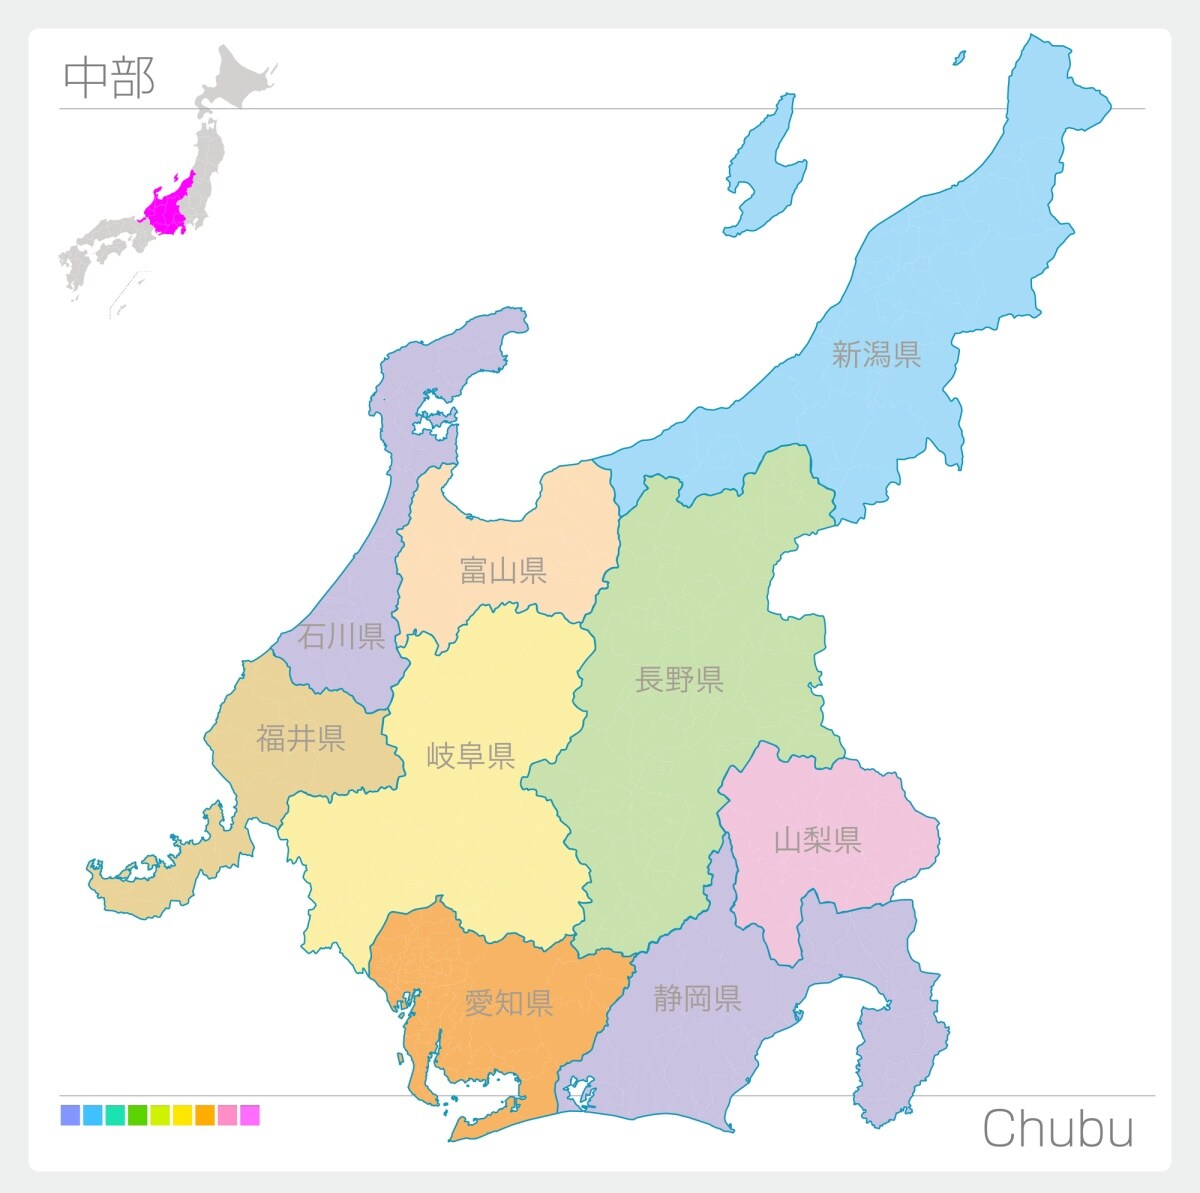 ทำความรู้จักภูมิภาคชูบุ (Chubu) ภาคกลางของญี่ปุ่น